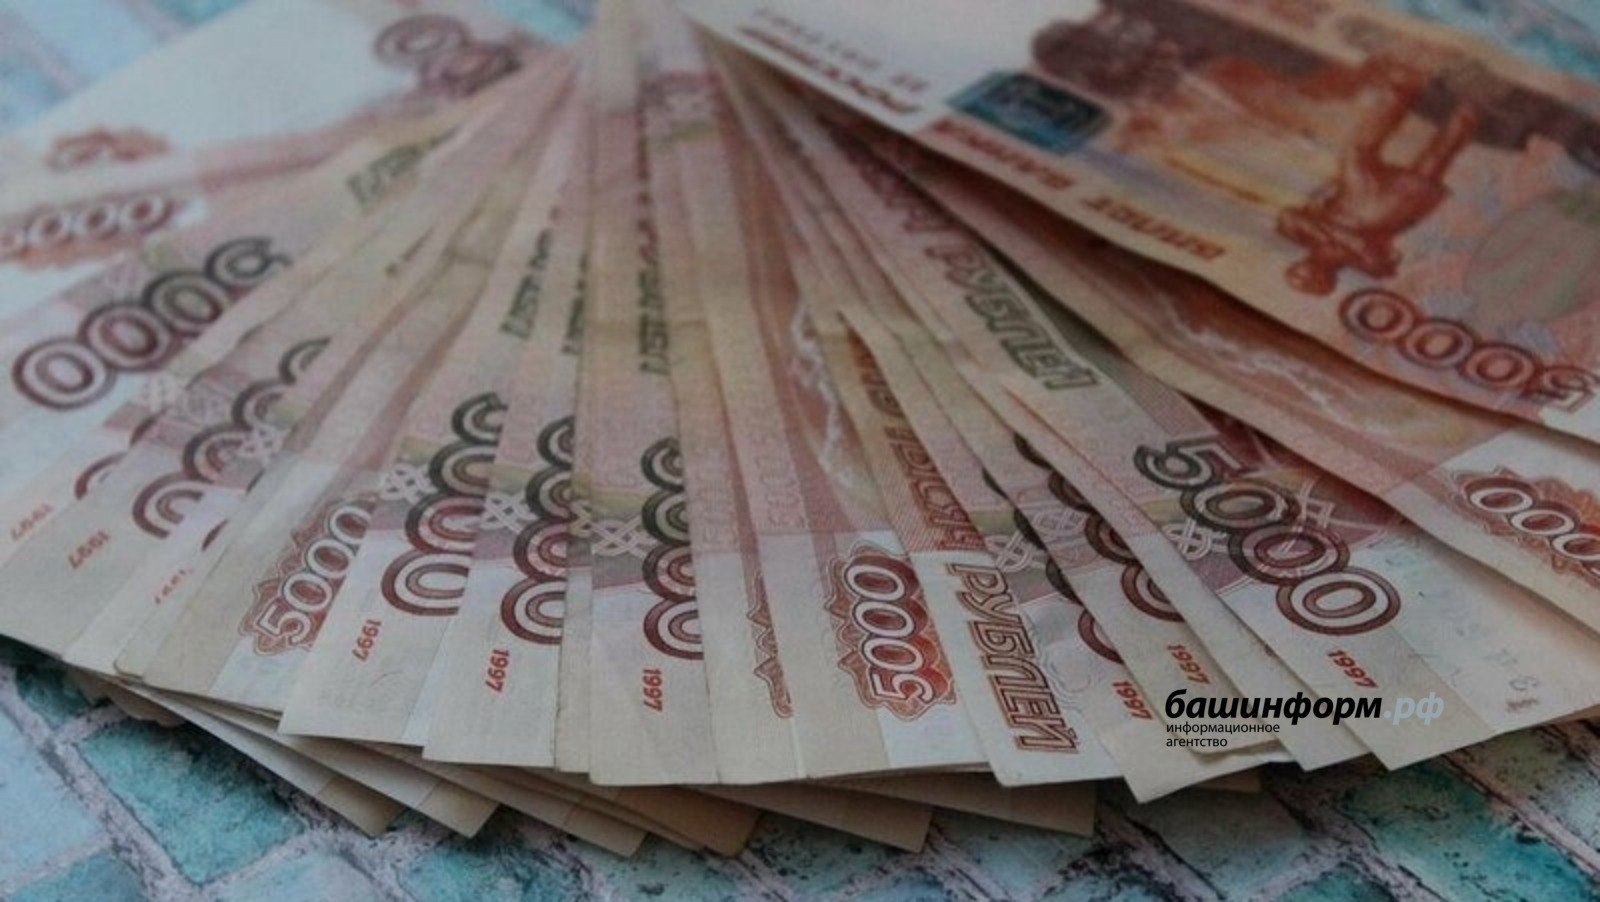 Башкирия получит дополнительно более 60 миллионов рублей на бесплатные лекарства для льготников